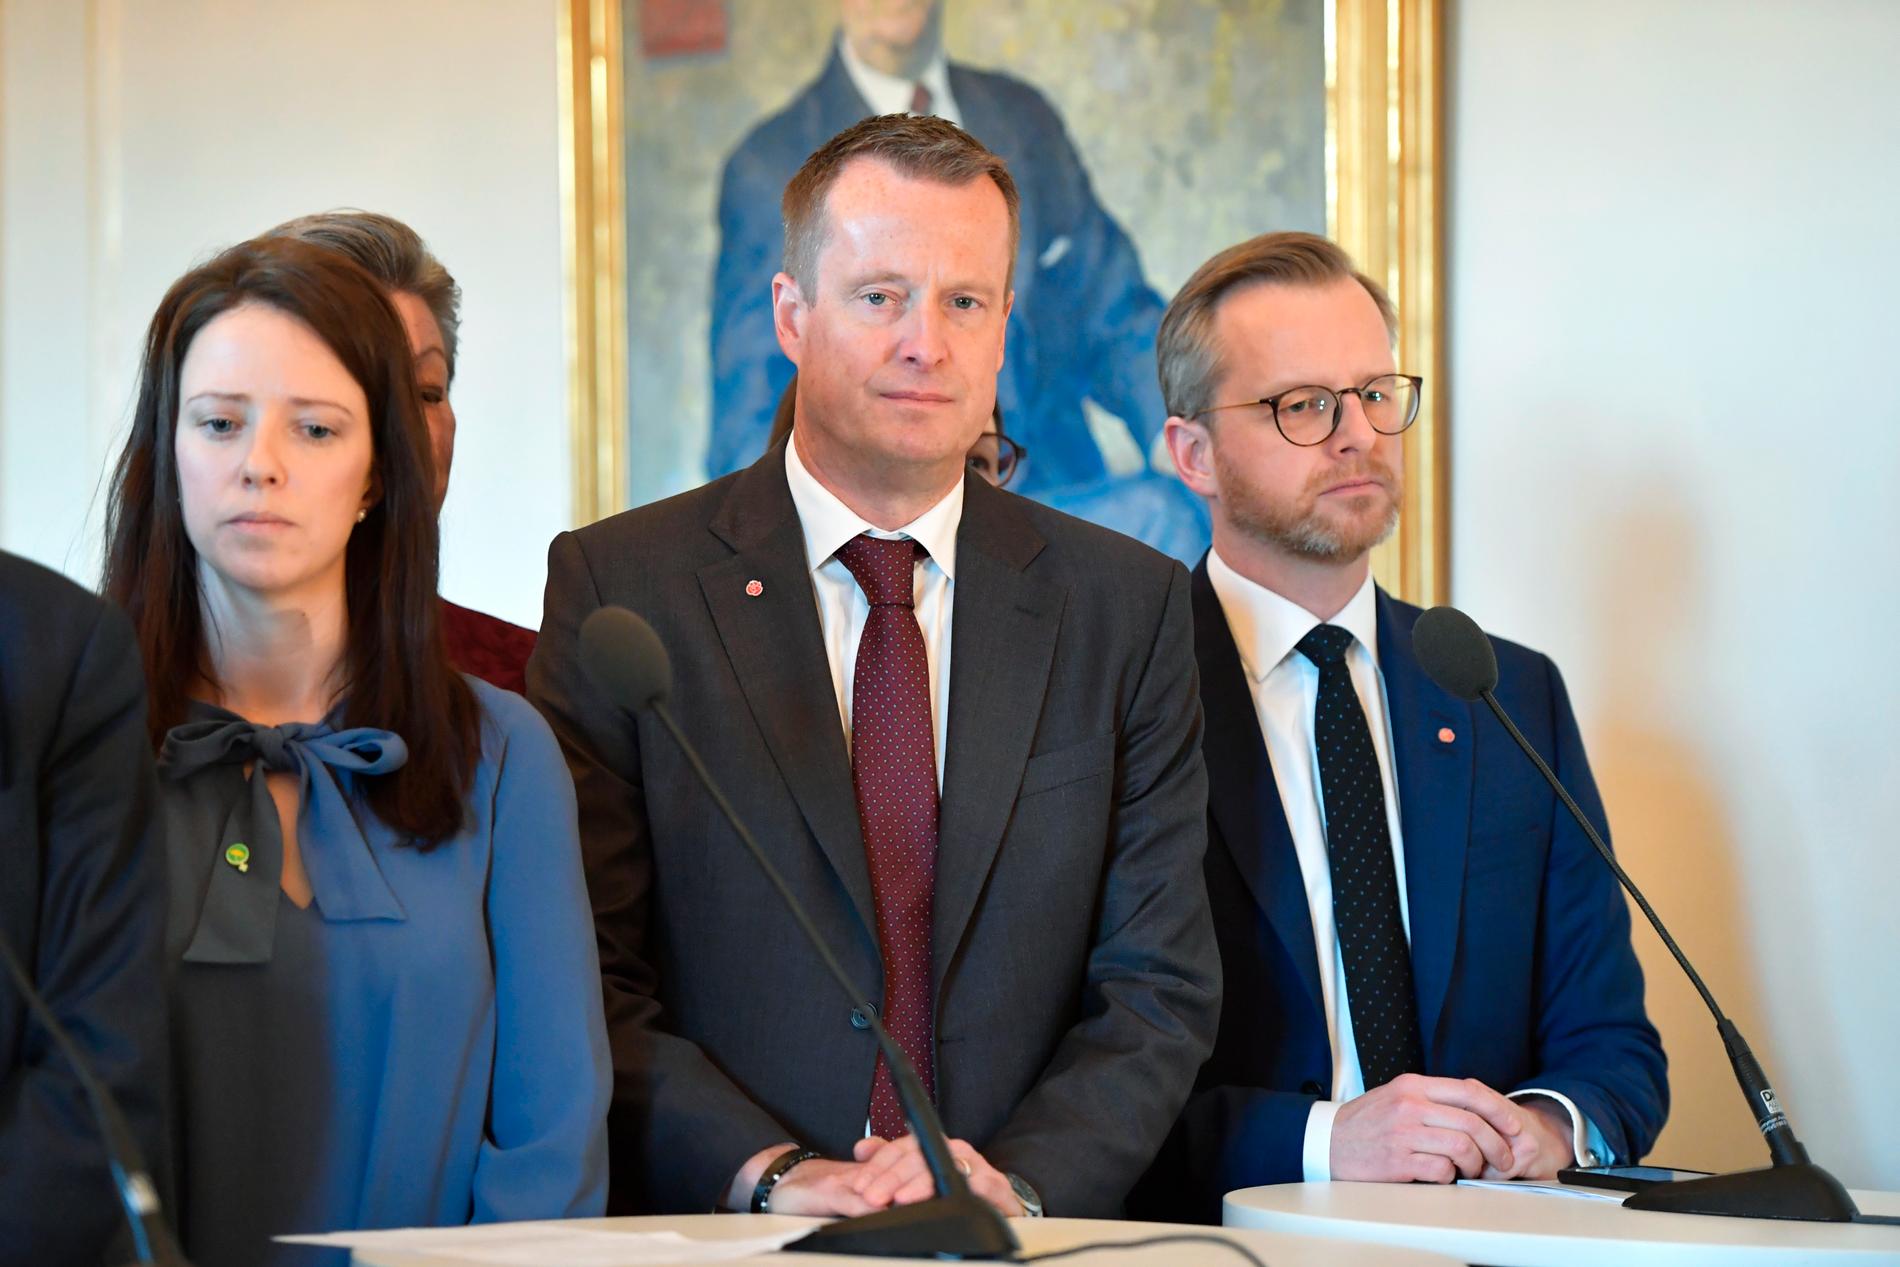 Flera ledarsidor fokuserade på utnämningen av energi- och digitaliseringsminister Anders Ygeman (S) som syns i mitten av bilden.